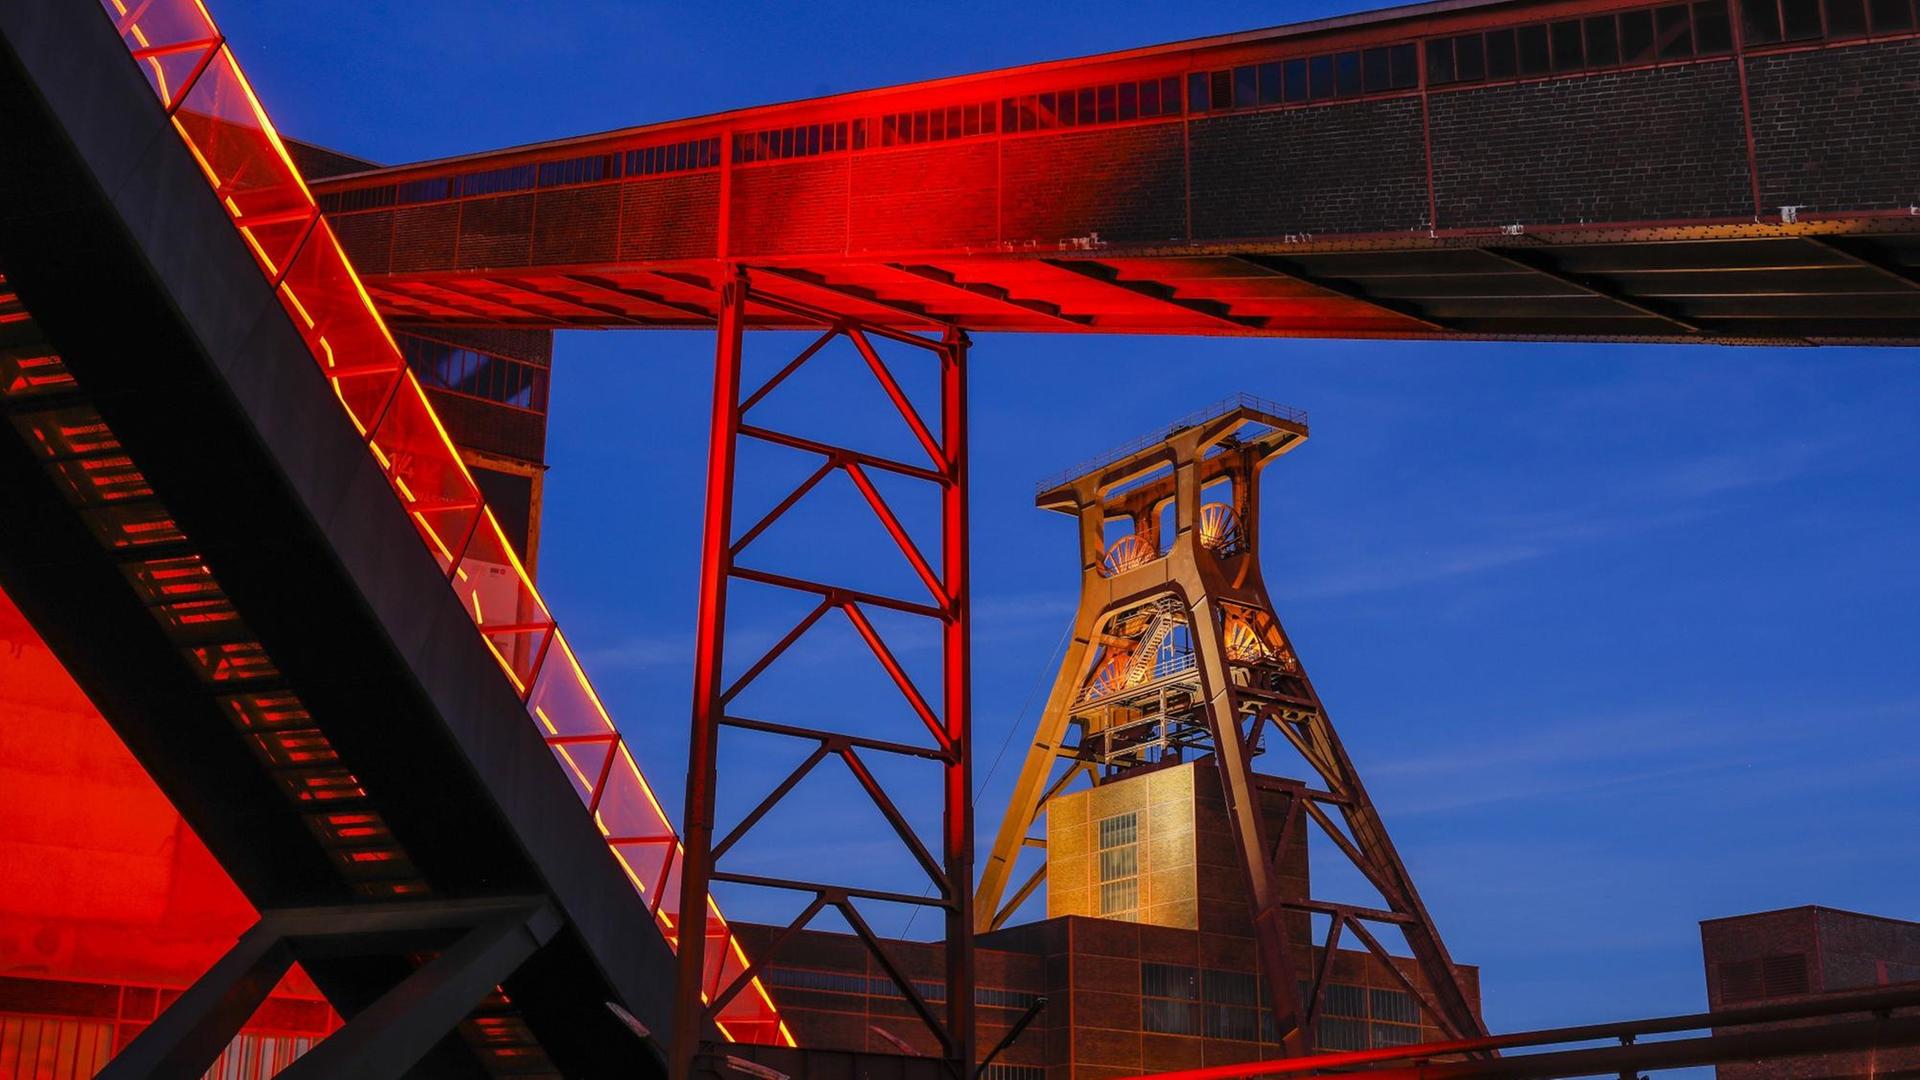 Das Foto zeigt die Zeche Zollverein in Essen. Der über das Ruhrgebiet hinaus bekannte Ausstellungs- und Veranstaltungsort ist in der Abenddämmerung rot illuminiert.